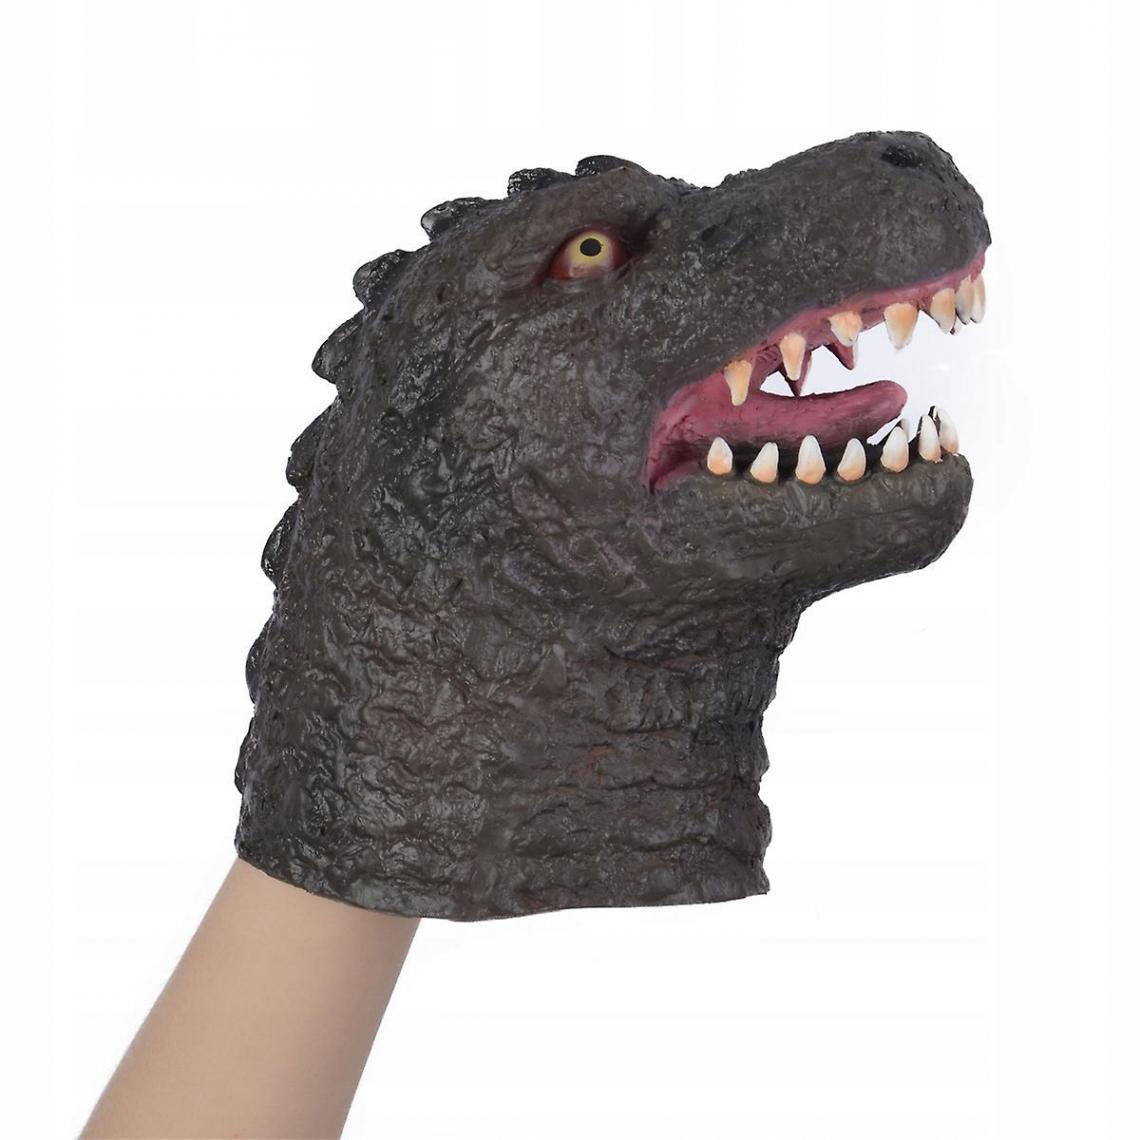 Universal - Godzilla VS King Kong jouets marionnettes à main en latex.(Gris) - Animaux